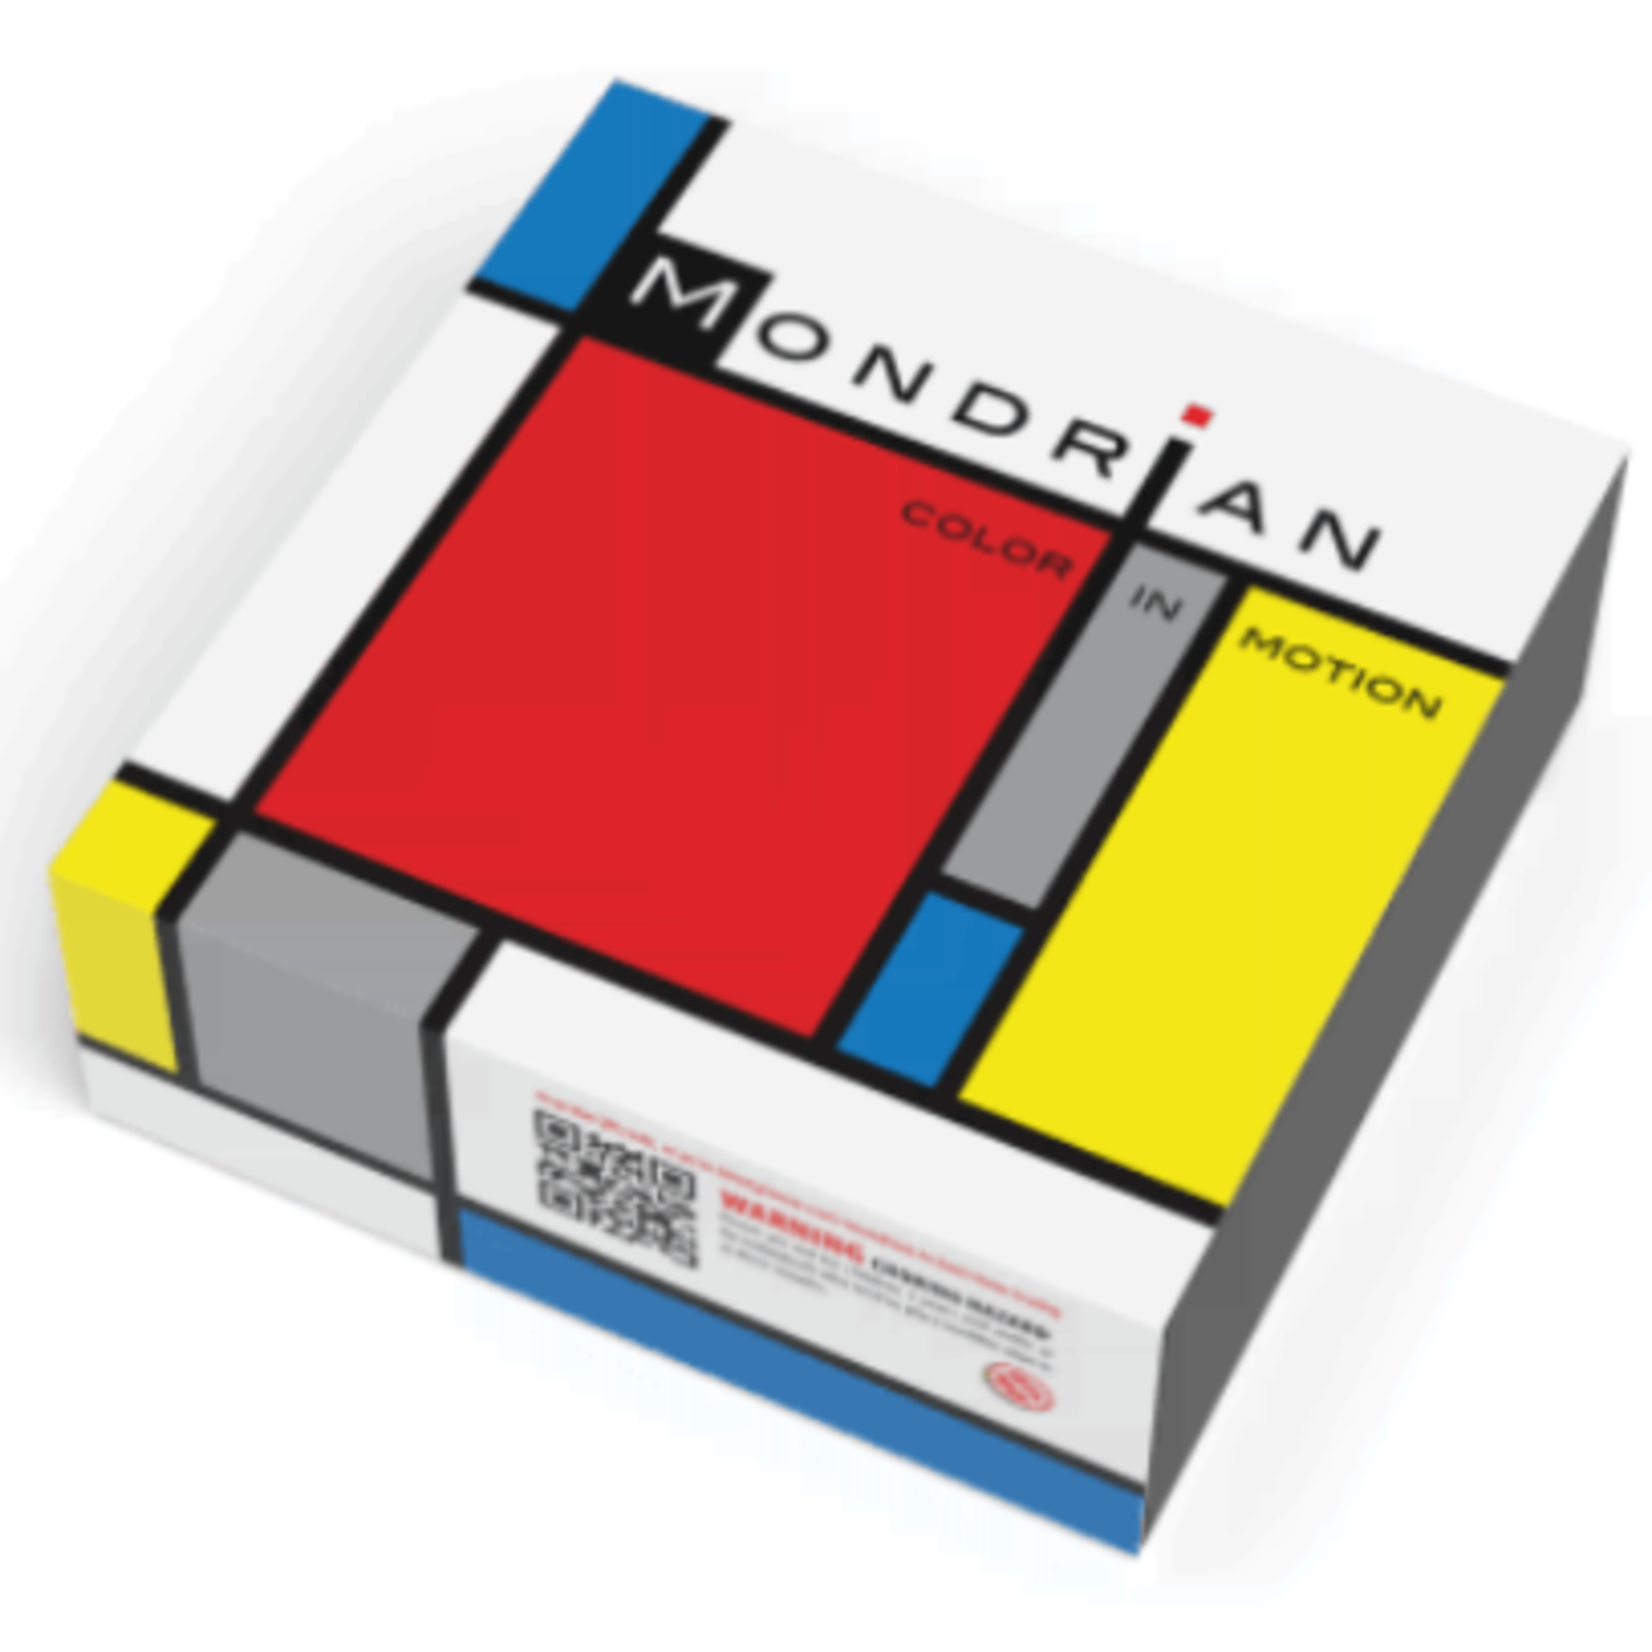 binary cocoa Mondrian: Color in Motion